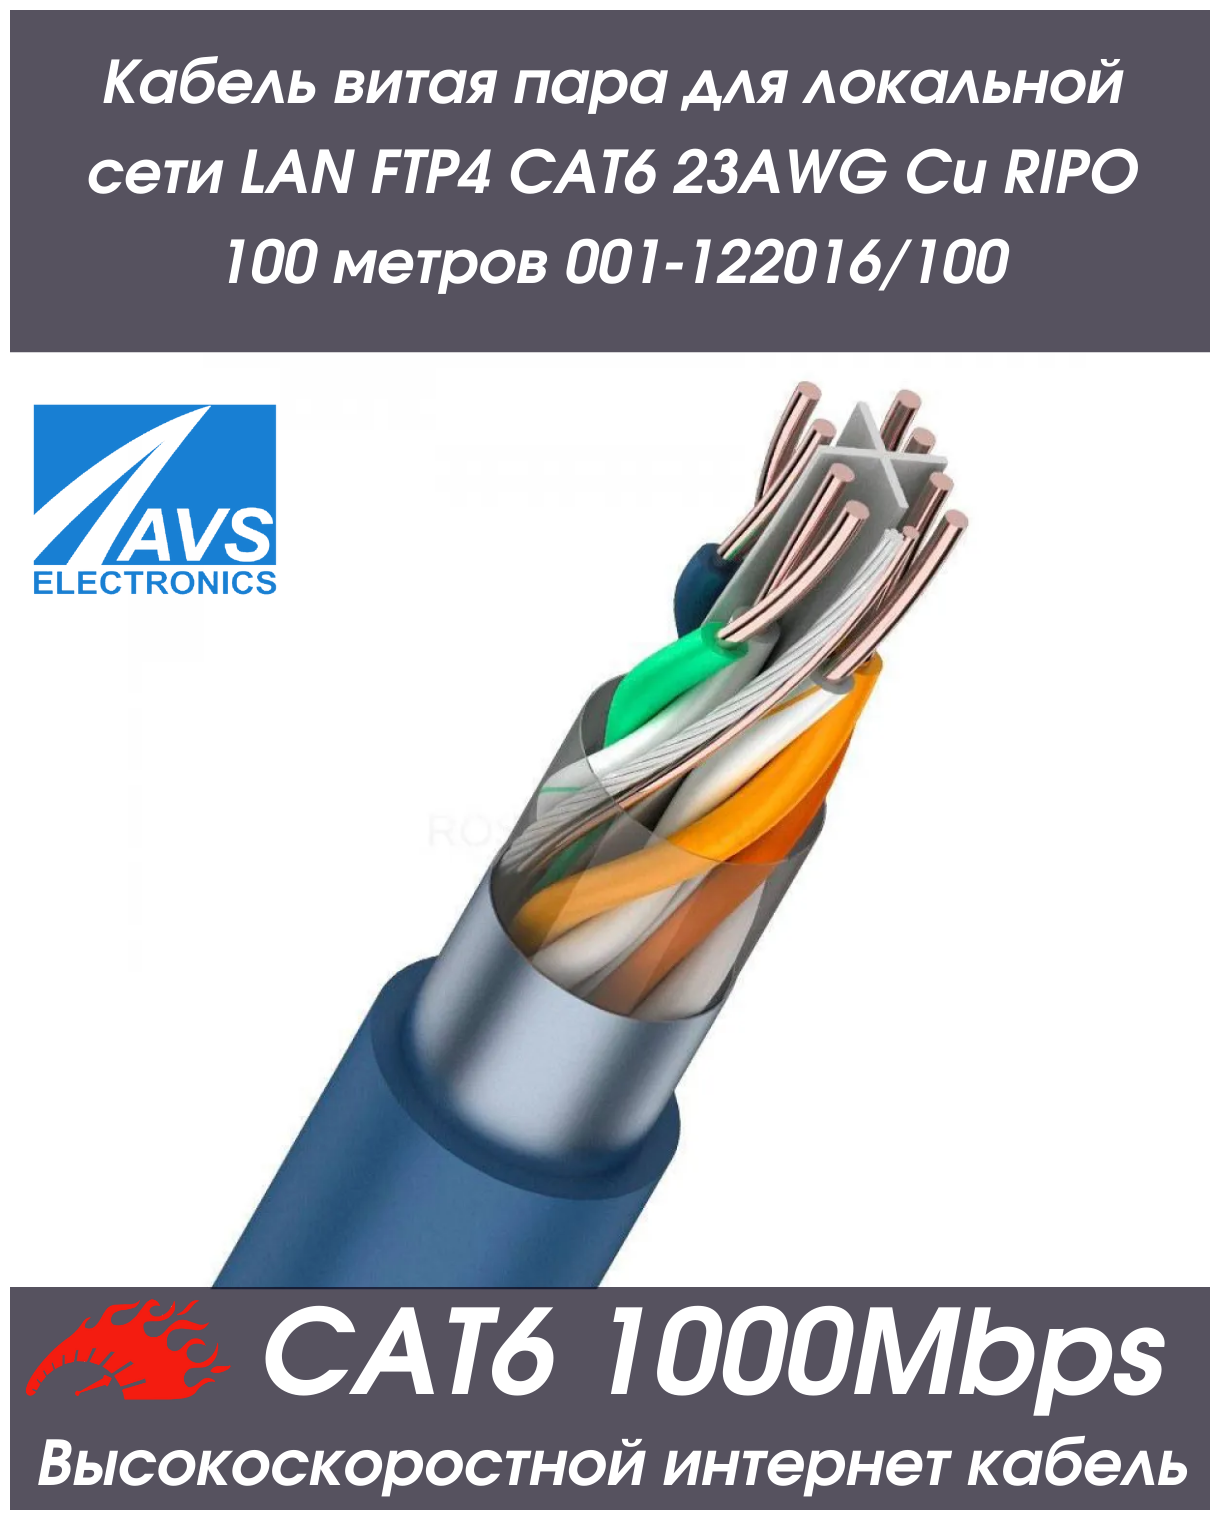 Кабель витая пара для локальной сети LAN FTP4 CAT6 23AWG Cu RIPO 100 метров 001-122016/100